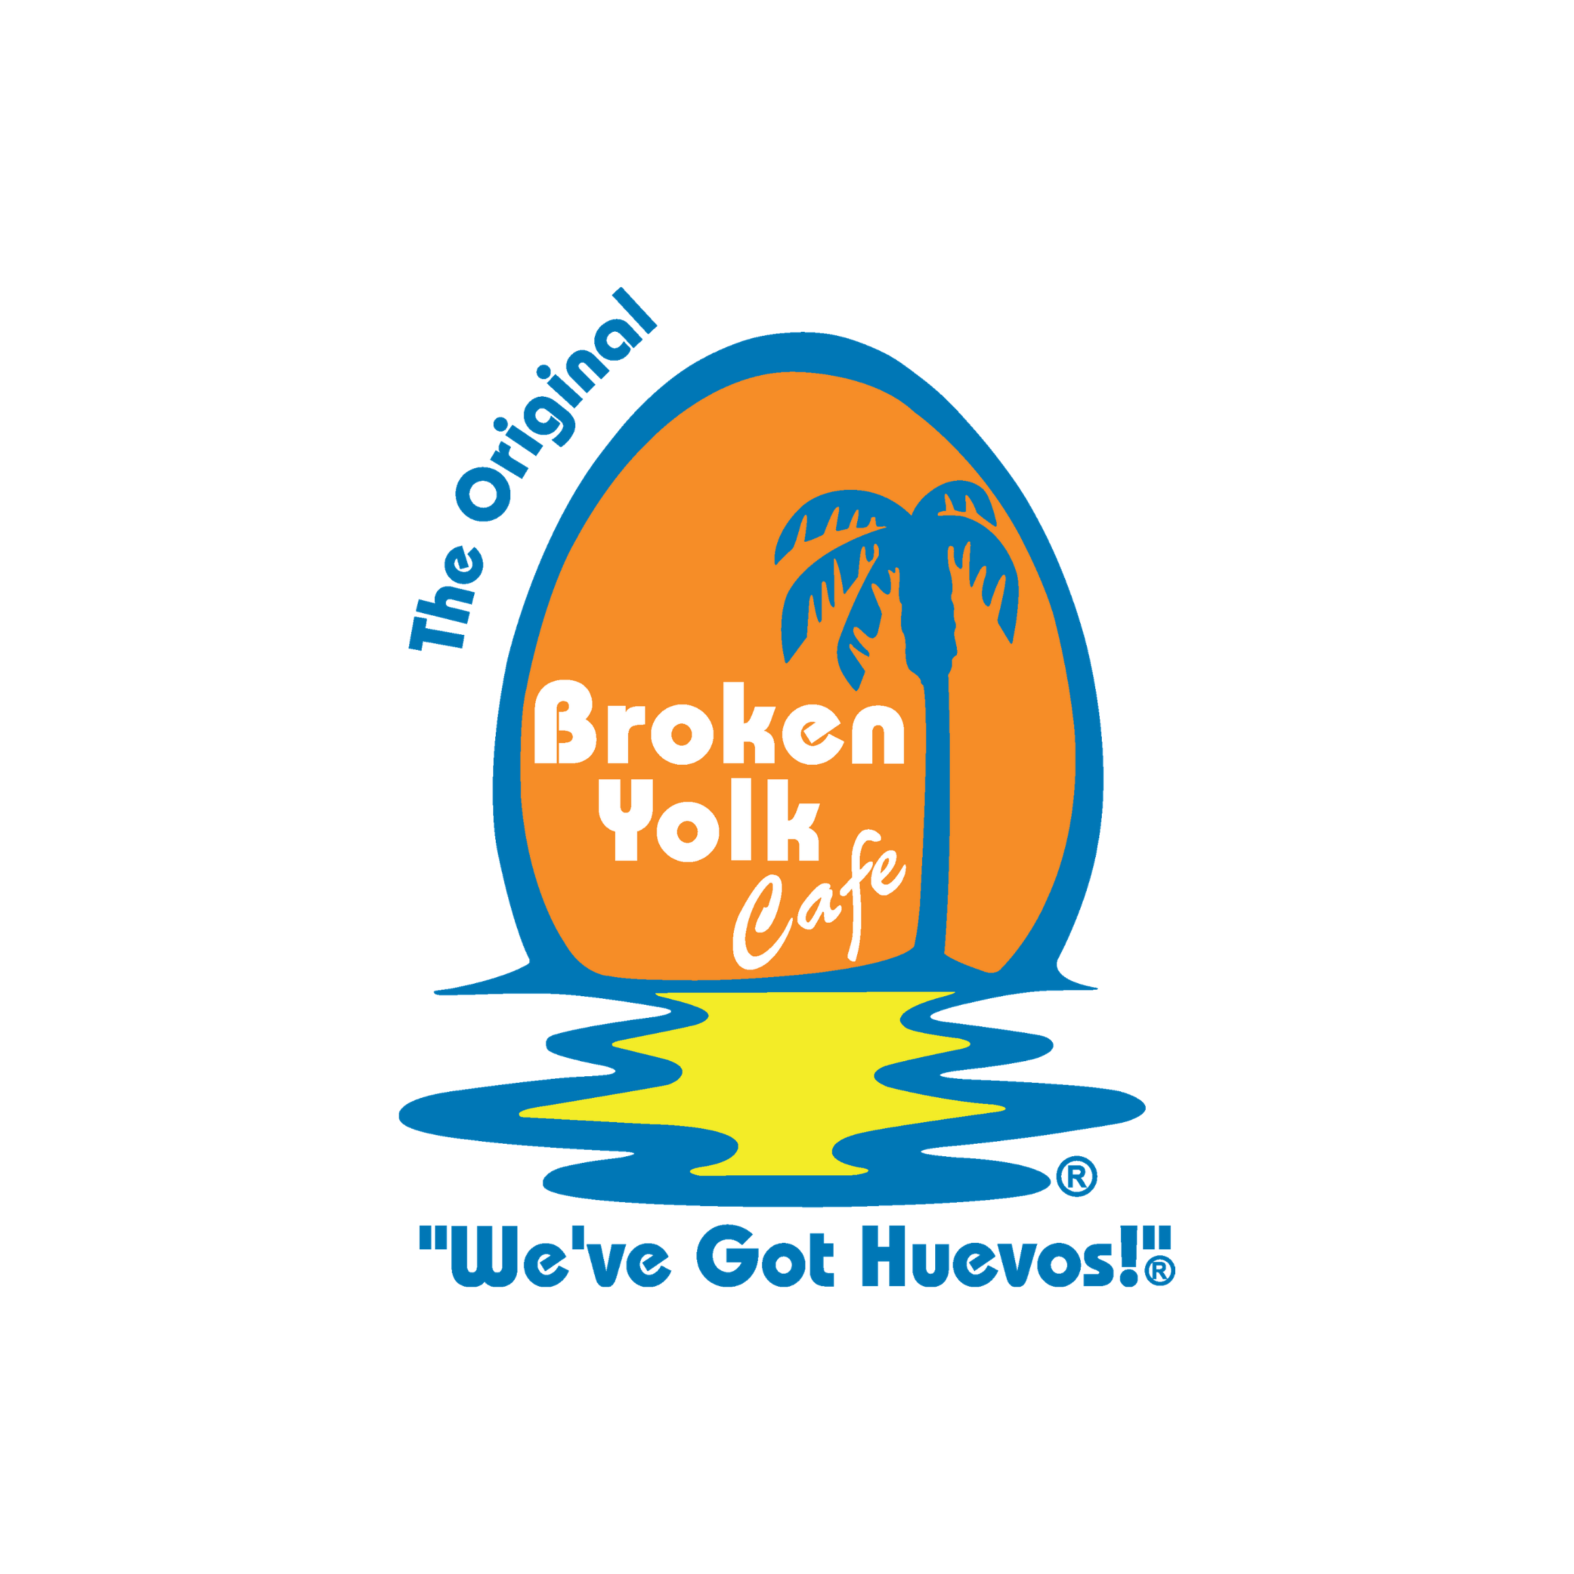 Broken Yolk Cafe logo